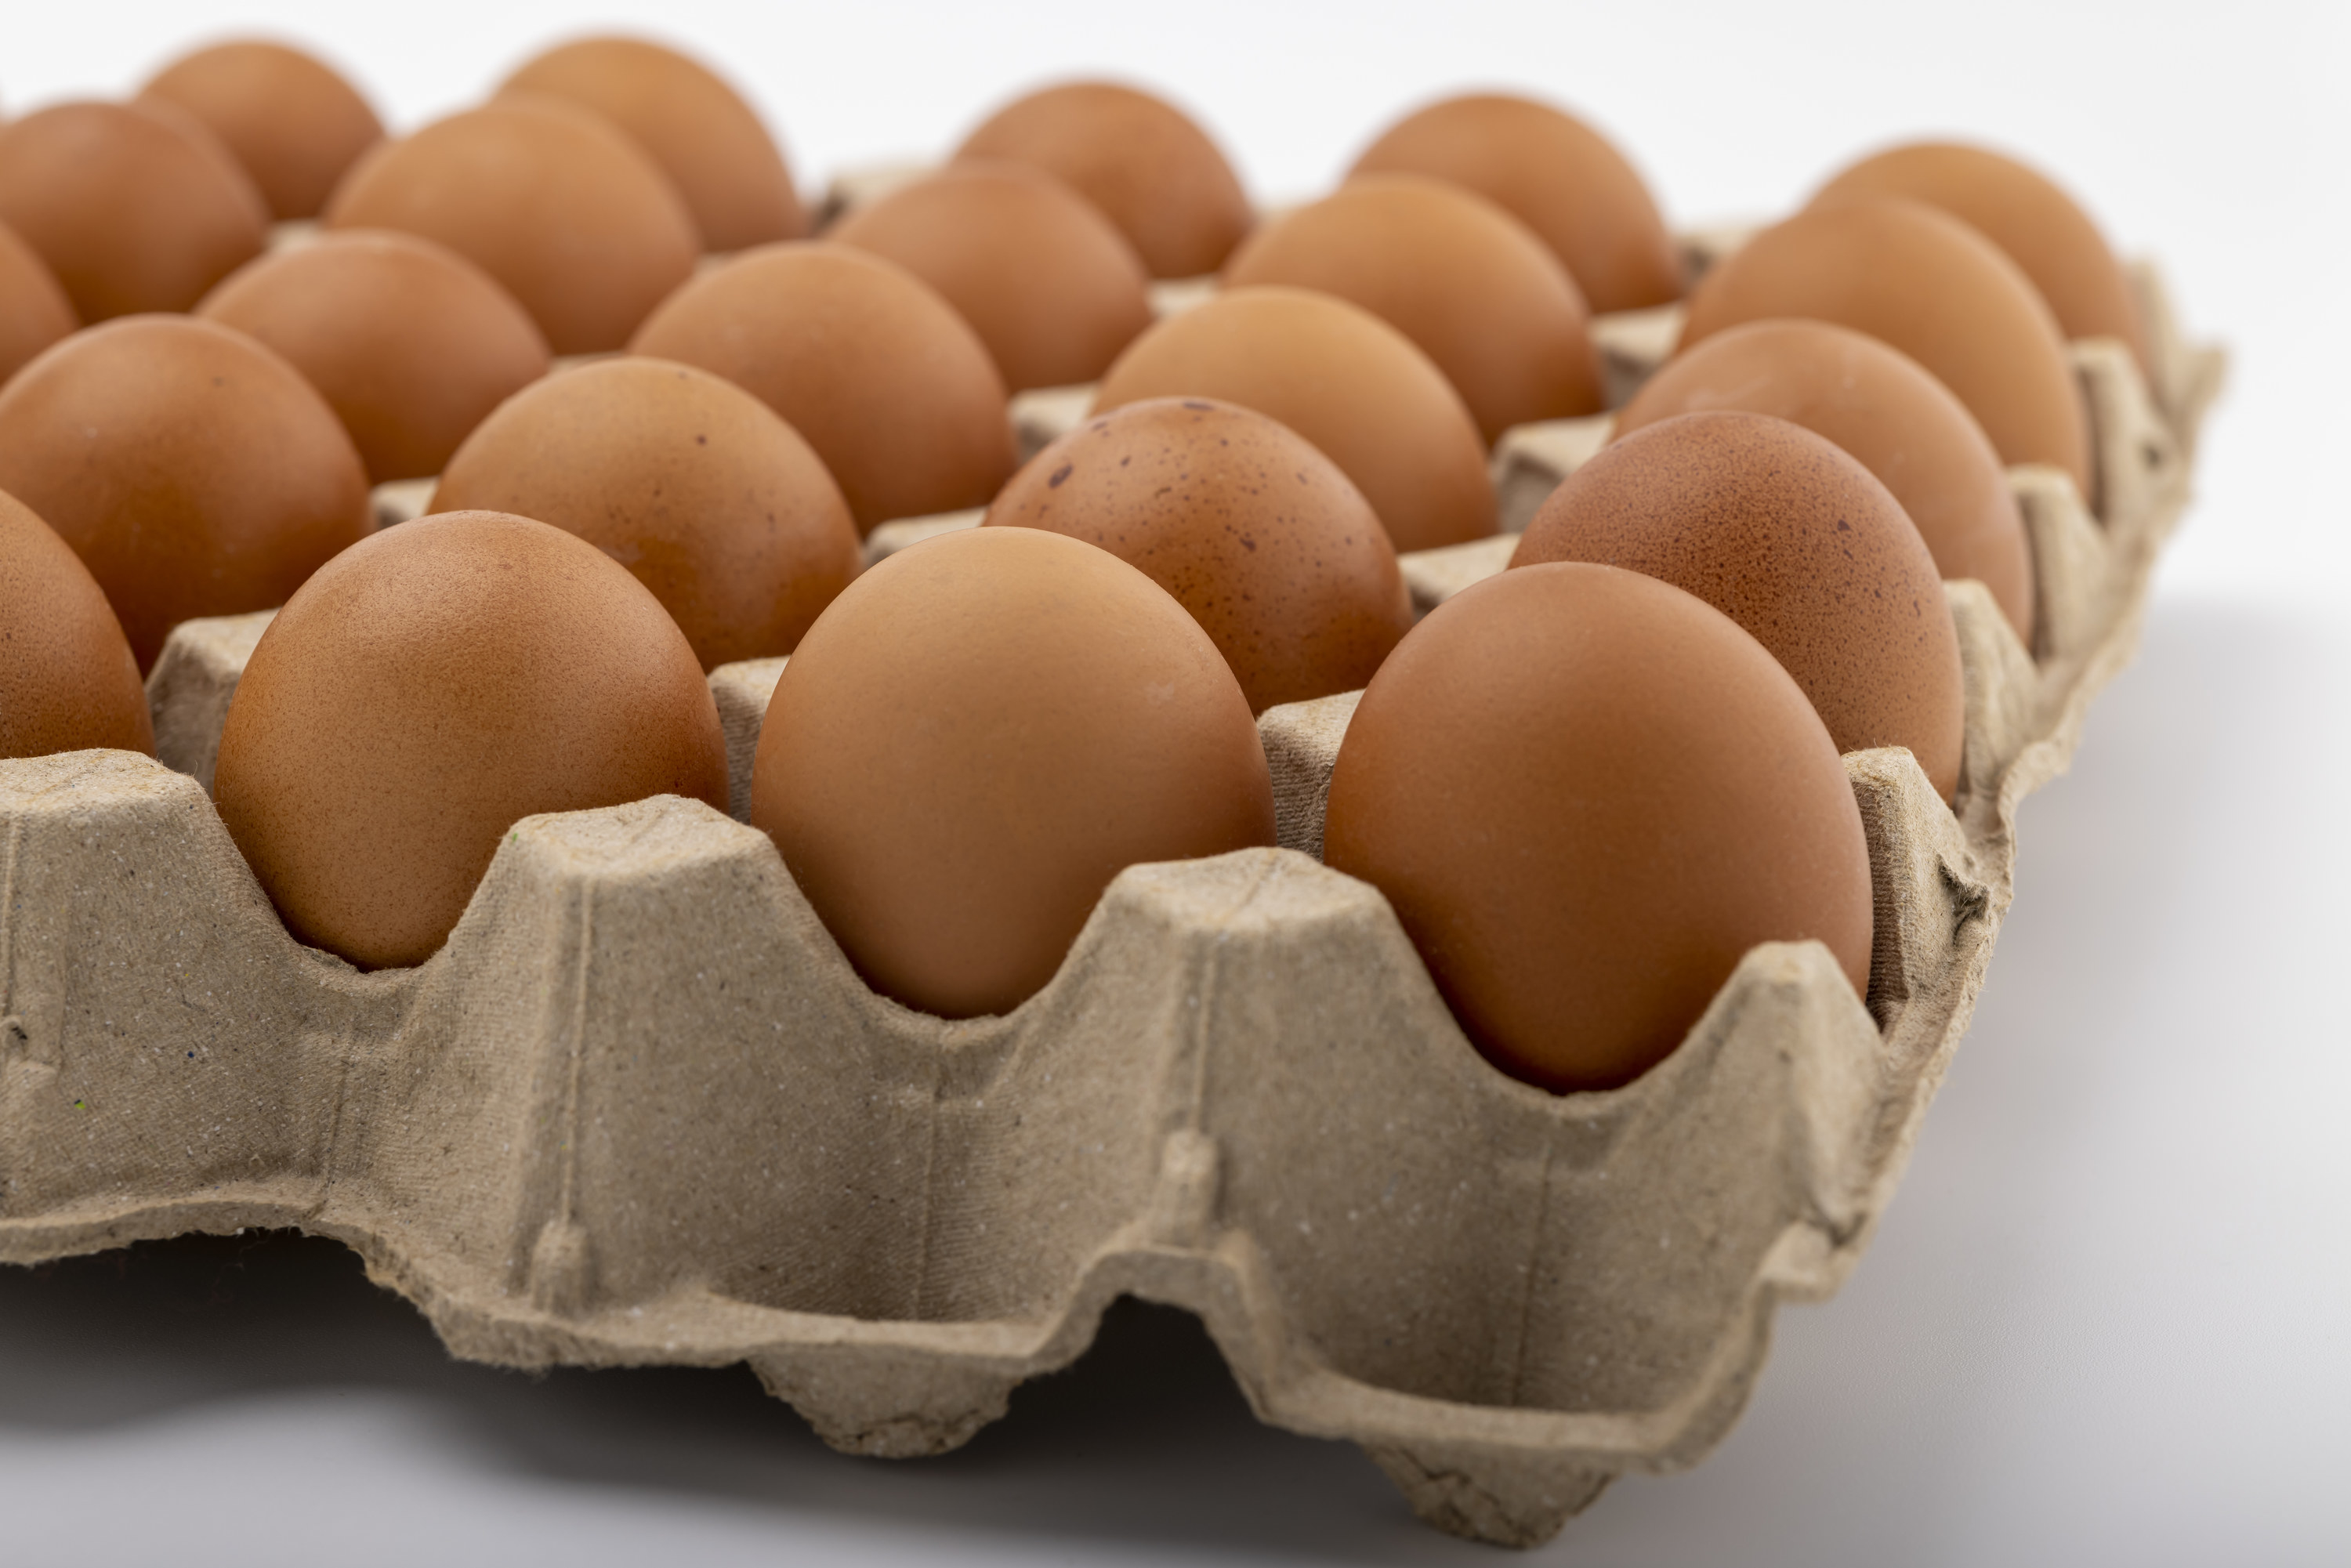 A carton of brown eggs